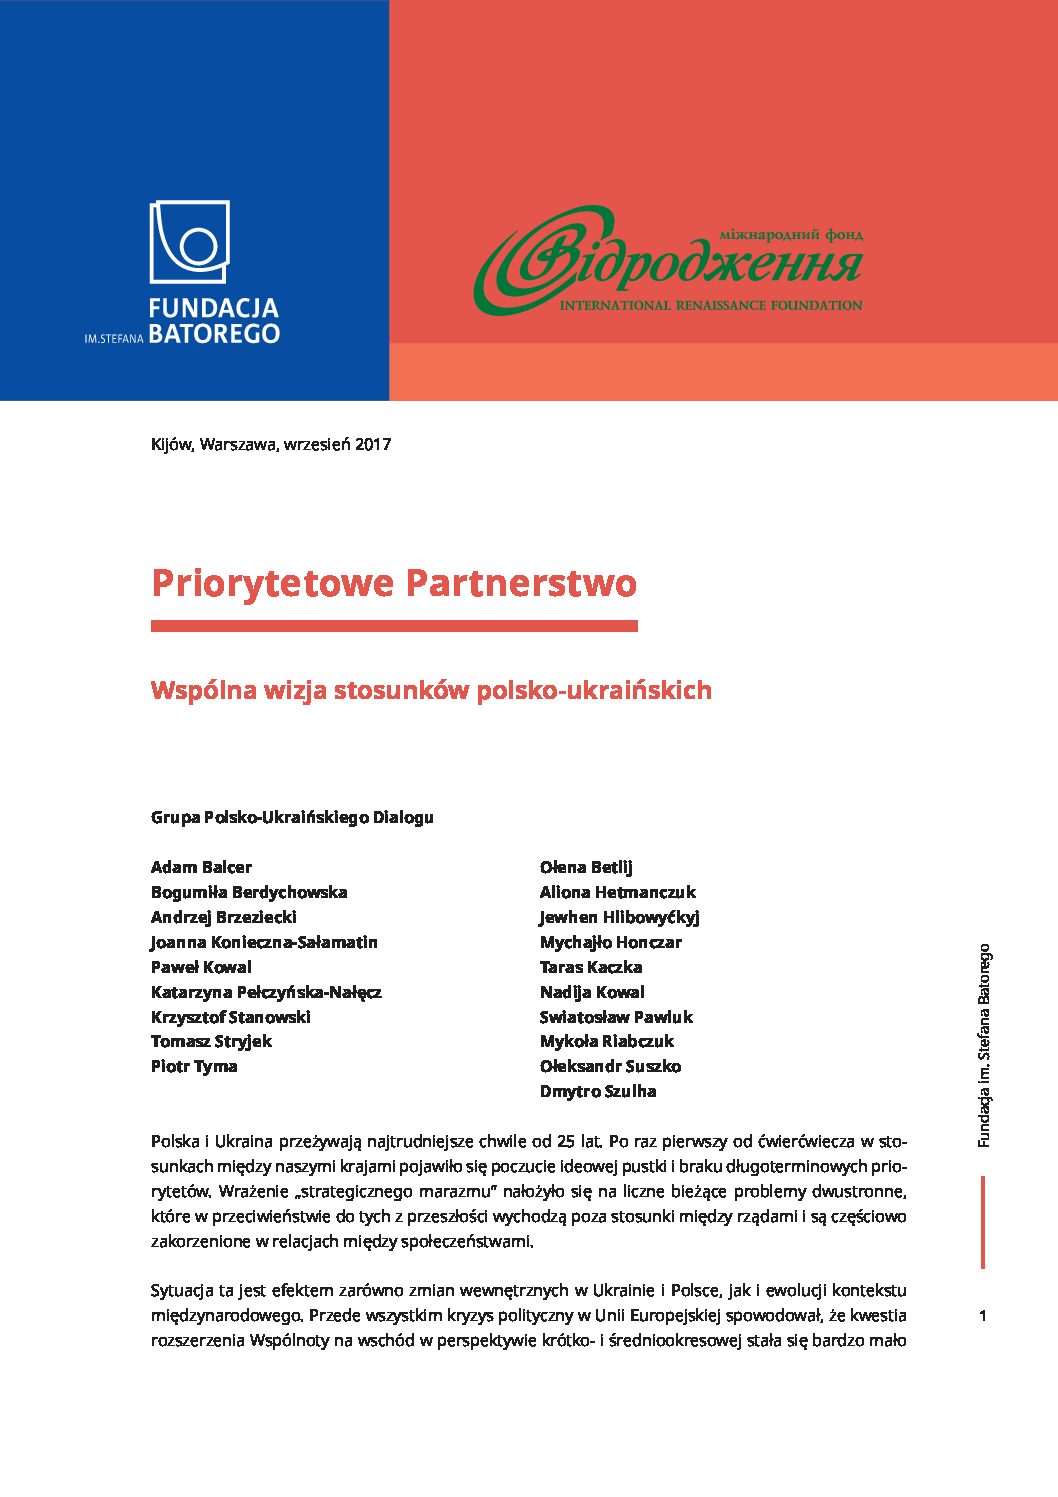 Priorytetowe partnerstwo. Wspólna wizja stosunków polsko-ukraińskich